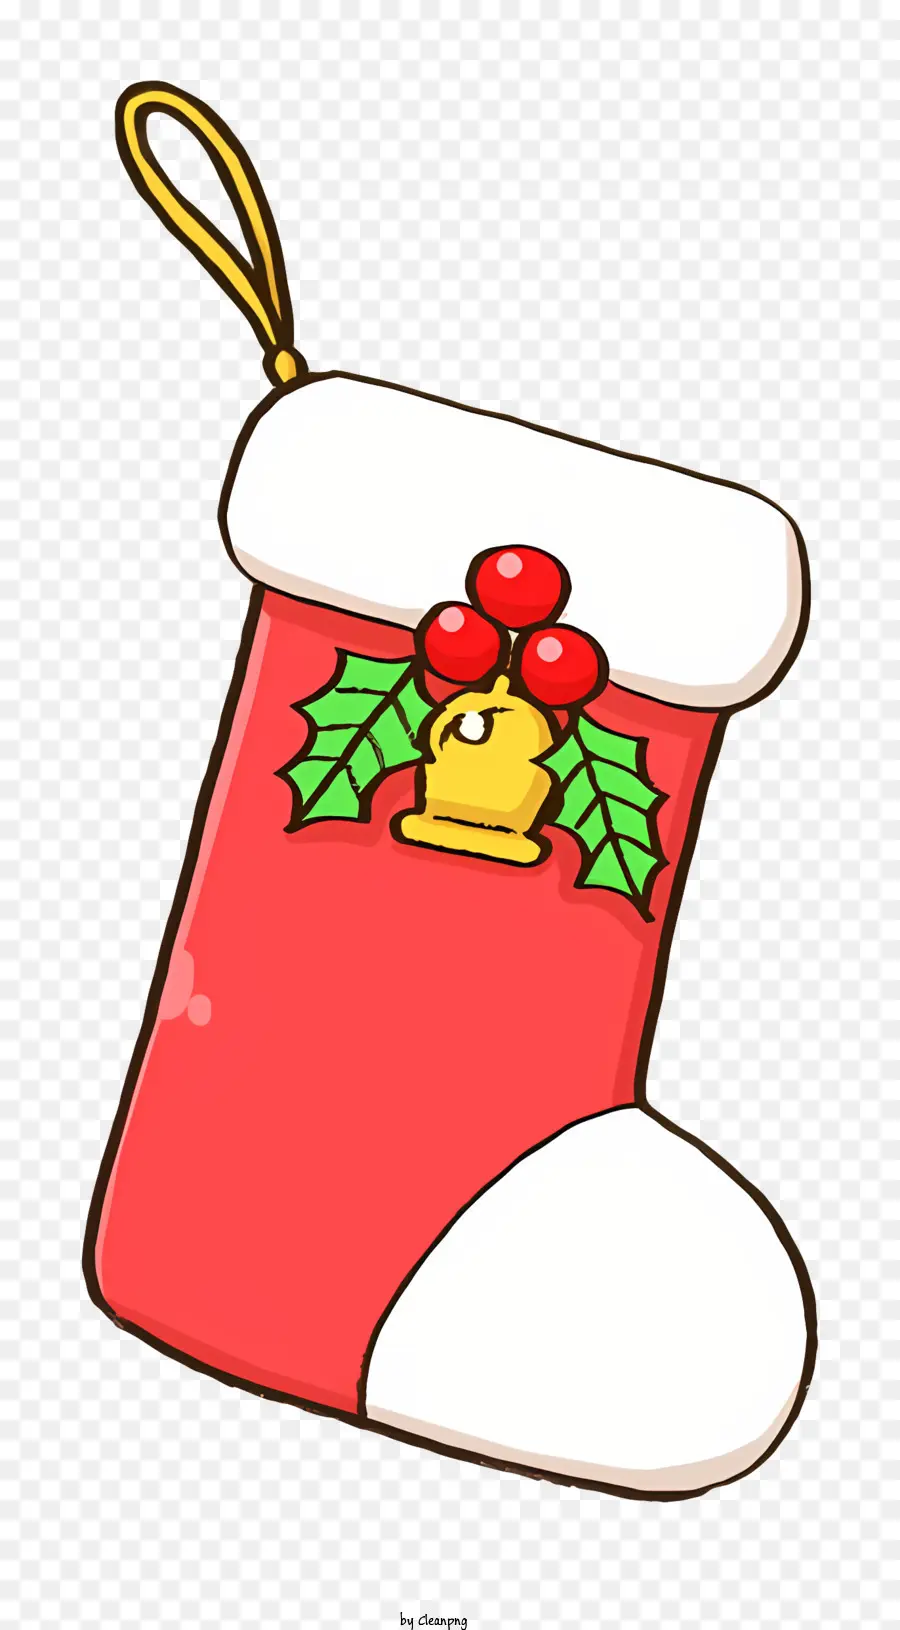 Phim hoạt hình Bow holly lá holly lá - Red Stocking với cung, holly, chuông, dây; 
Giáng sinh